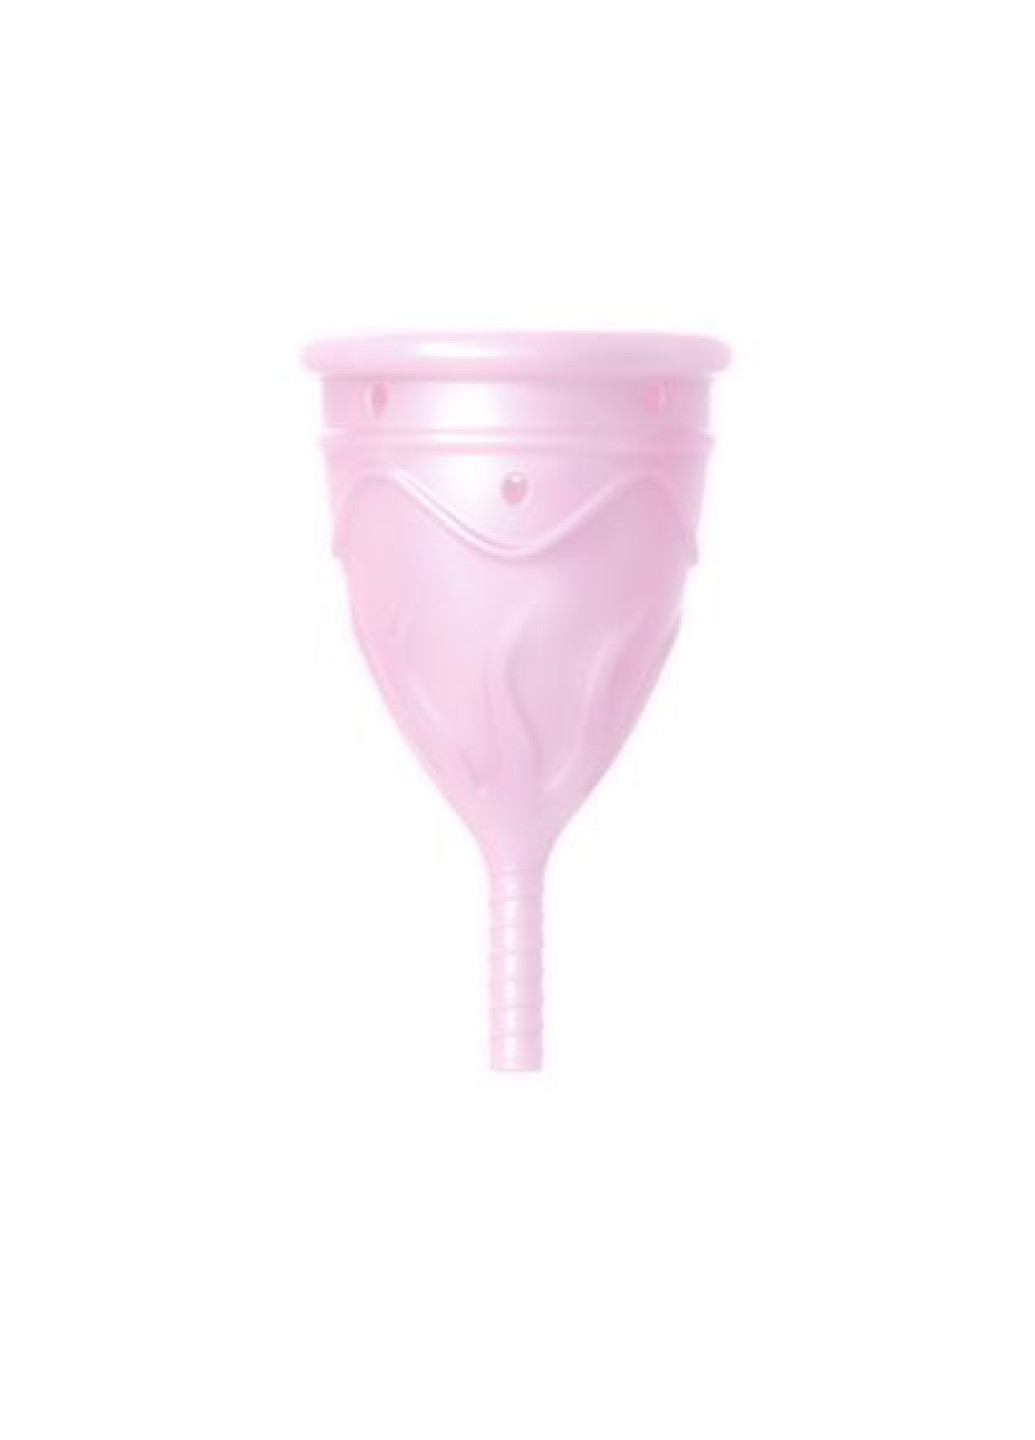 Менструальная чаша Eve Cup размер S, диаметр 3,2см Femintimate (252011979)